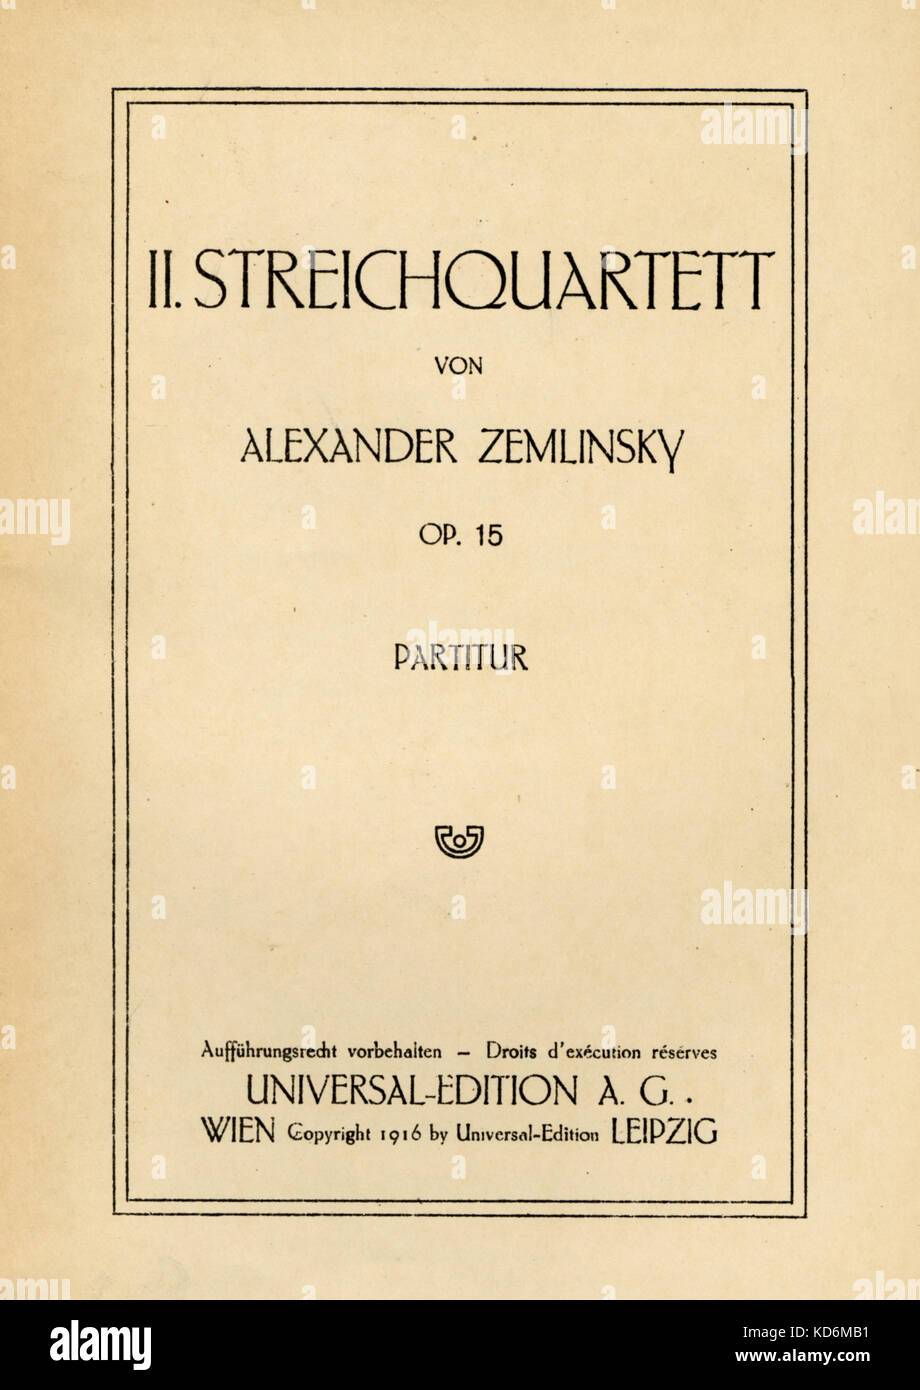 Alexander von Zemlinsky - Pagina del titolo di punteggio per quartetto d'archi n. 2, Opus 15. Il compositore austriaco & conduttore, 14 Ottobre 1871 - 15 Marzo 1942. Edizione Universal, 1916 Foto Stock